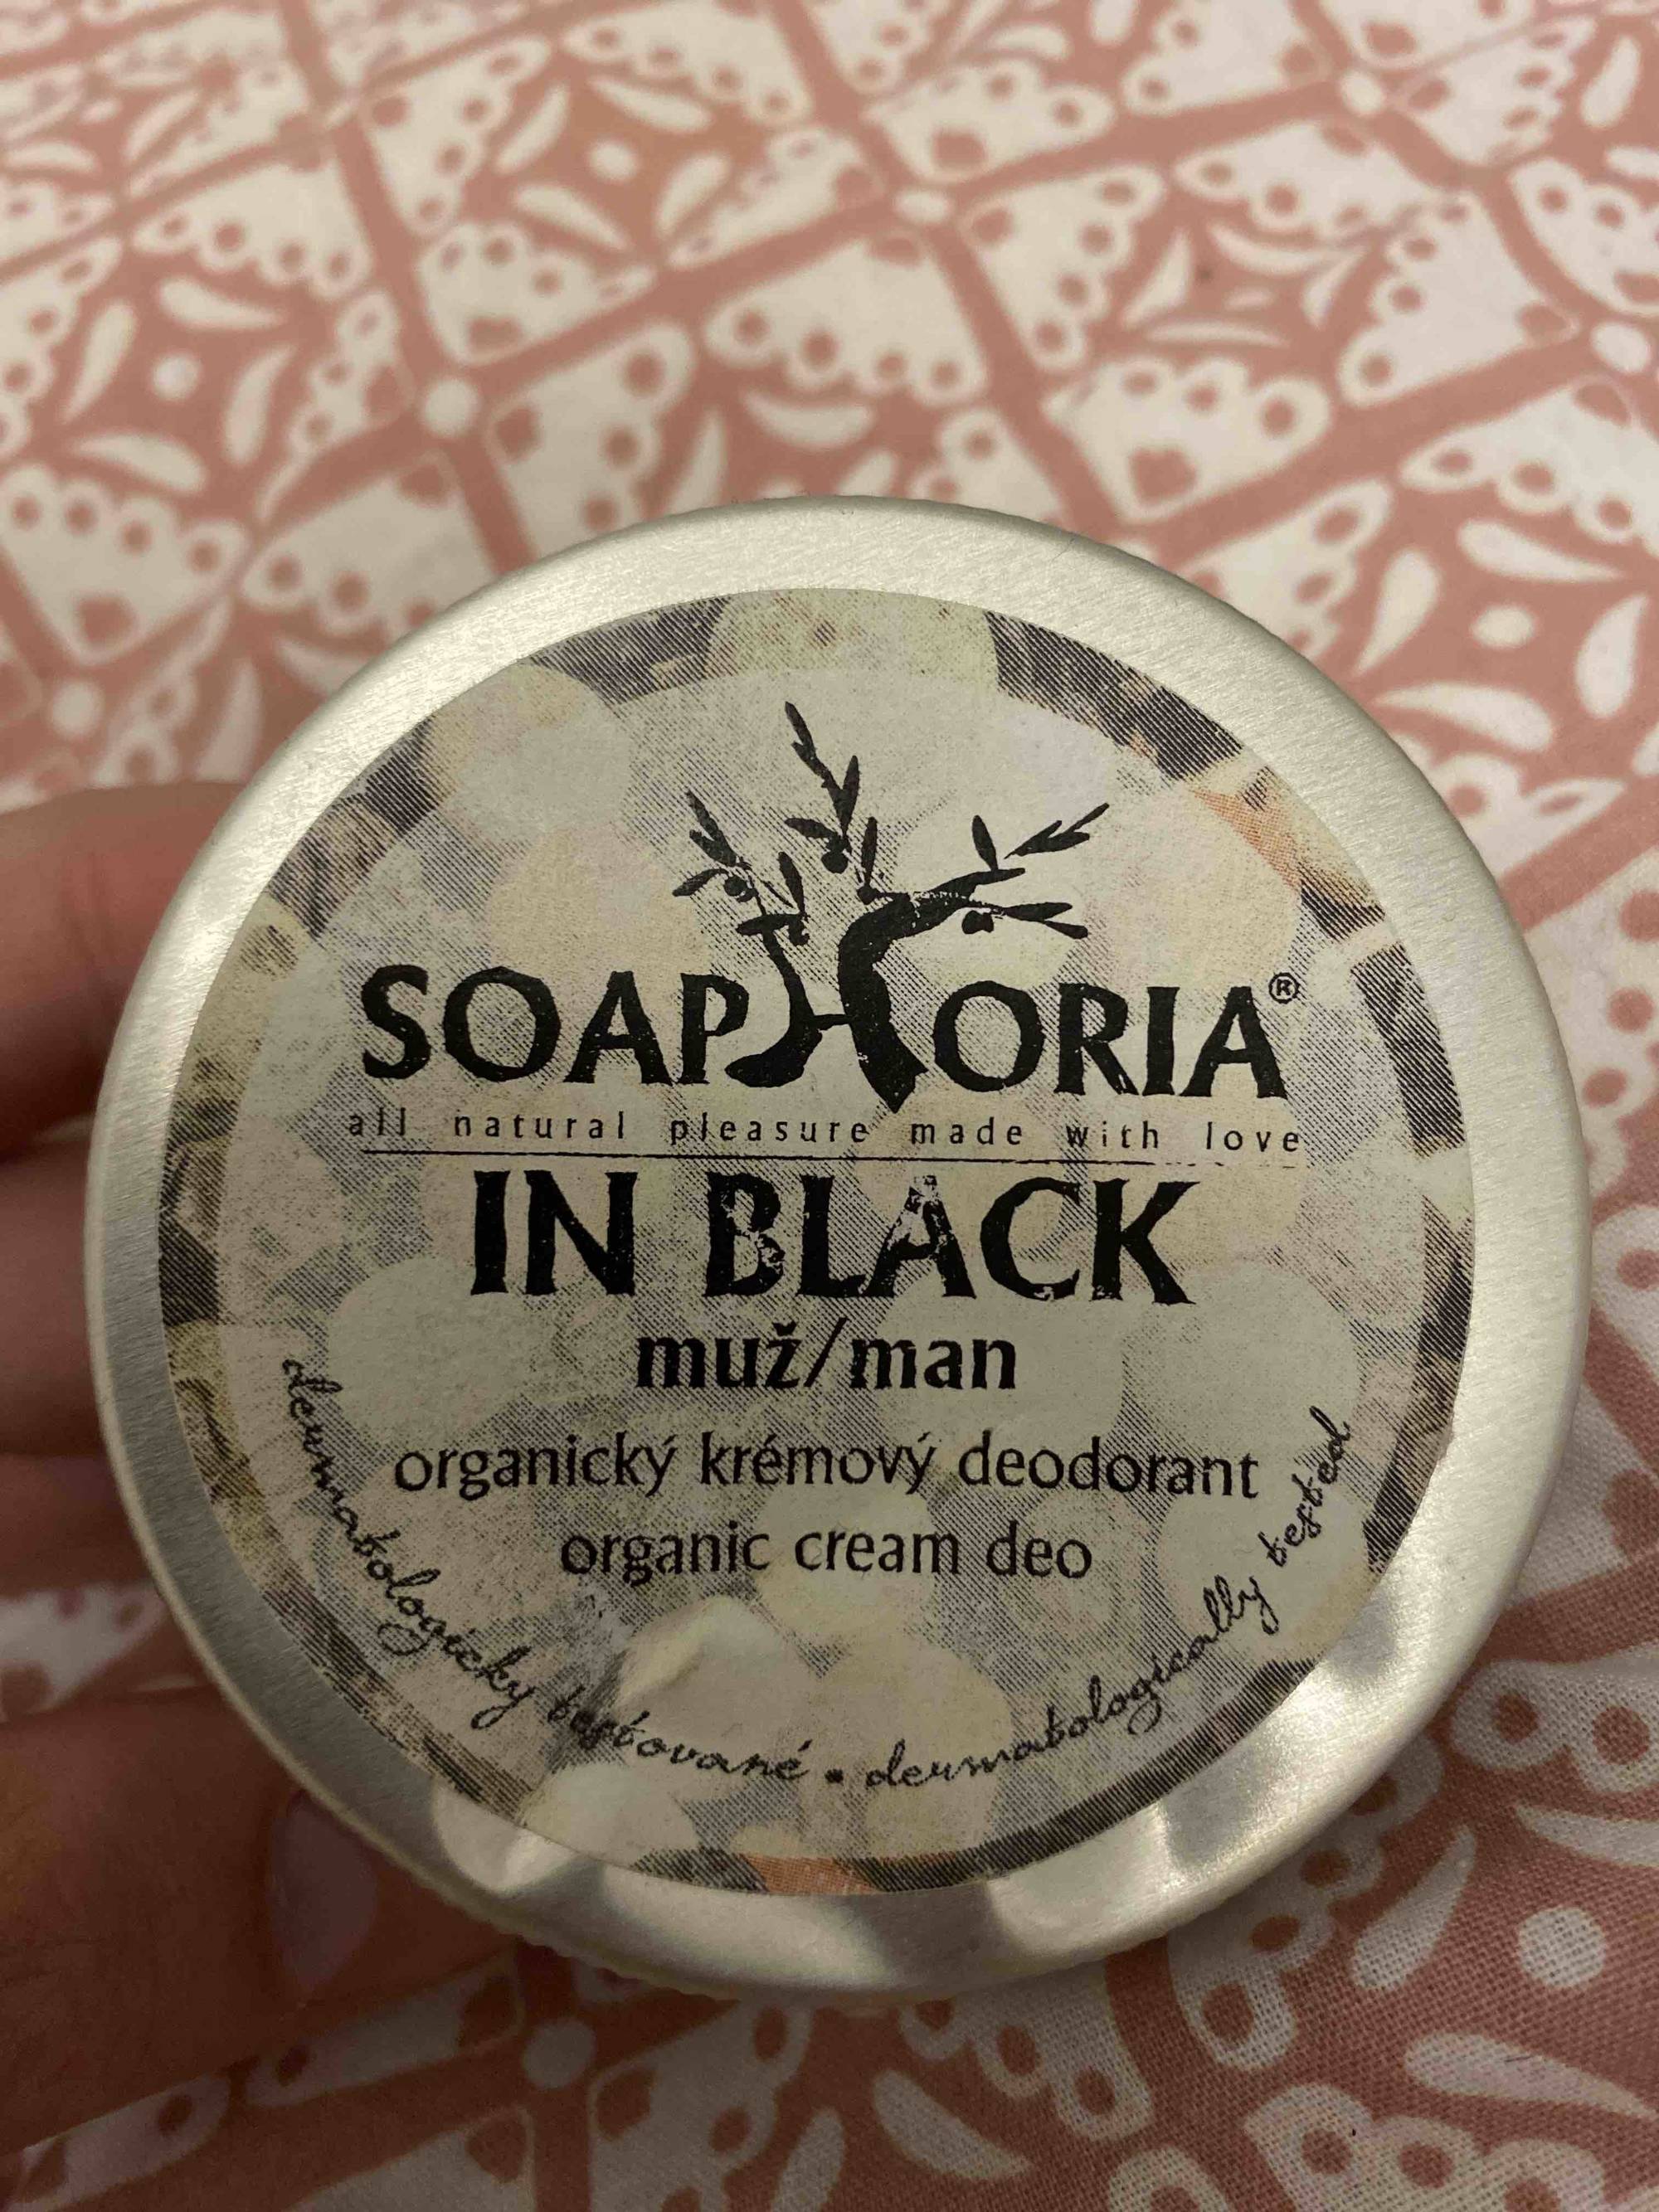 SOAPHORIA - In black man - Organic cream deo